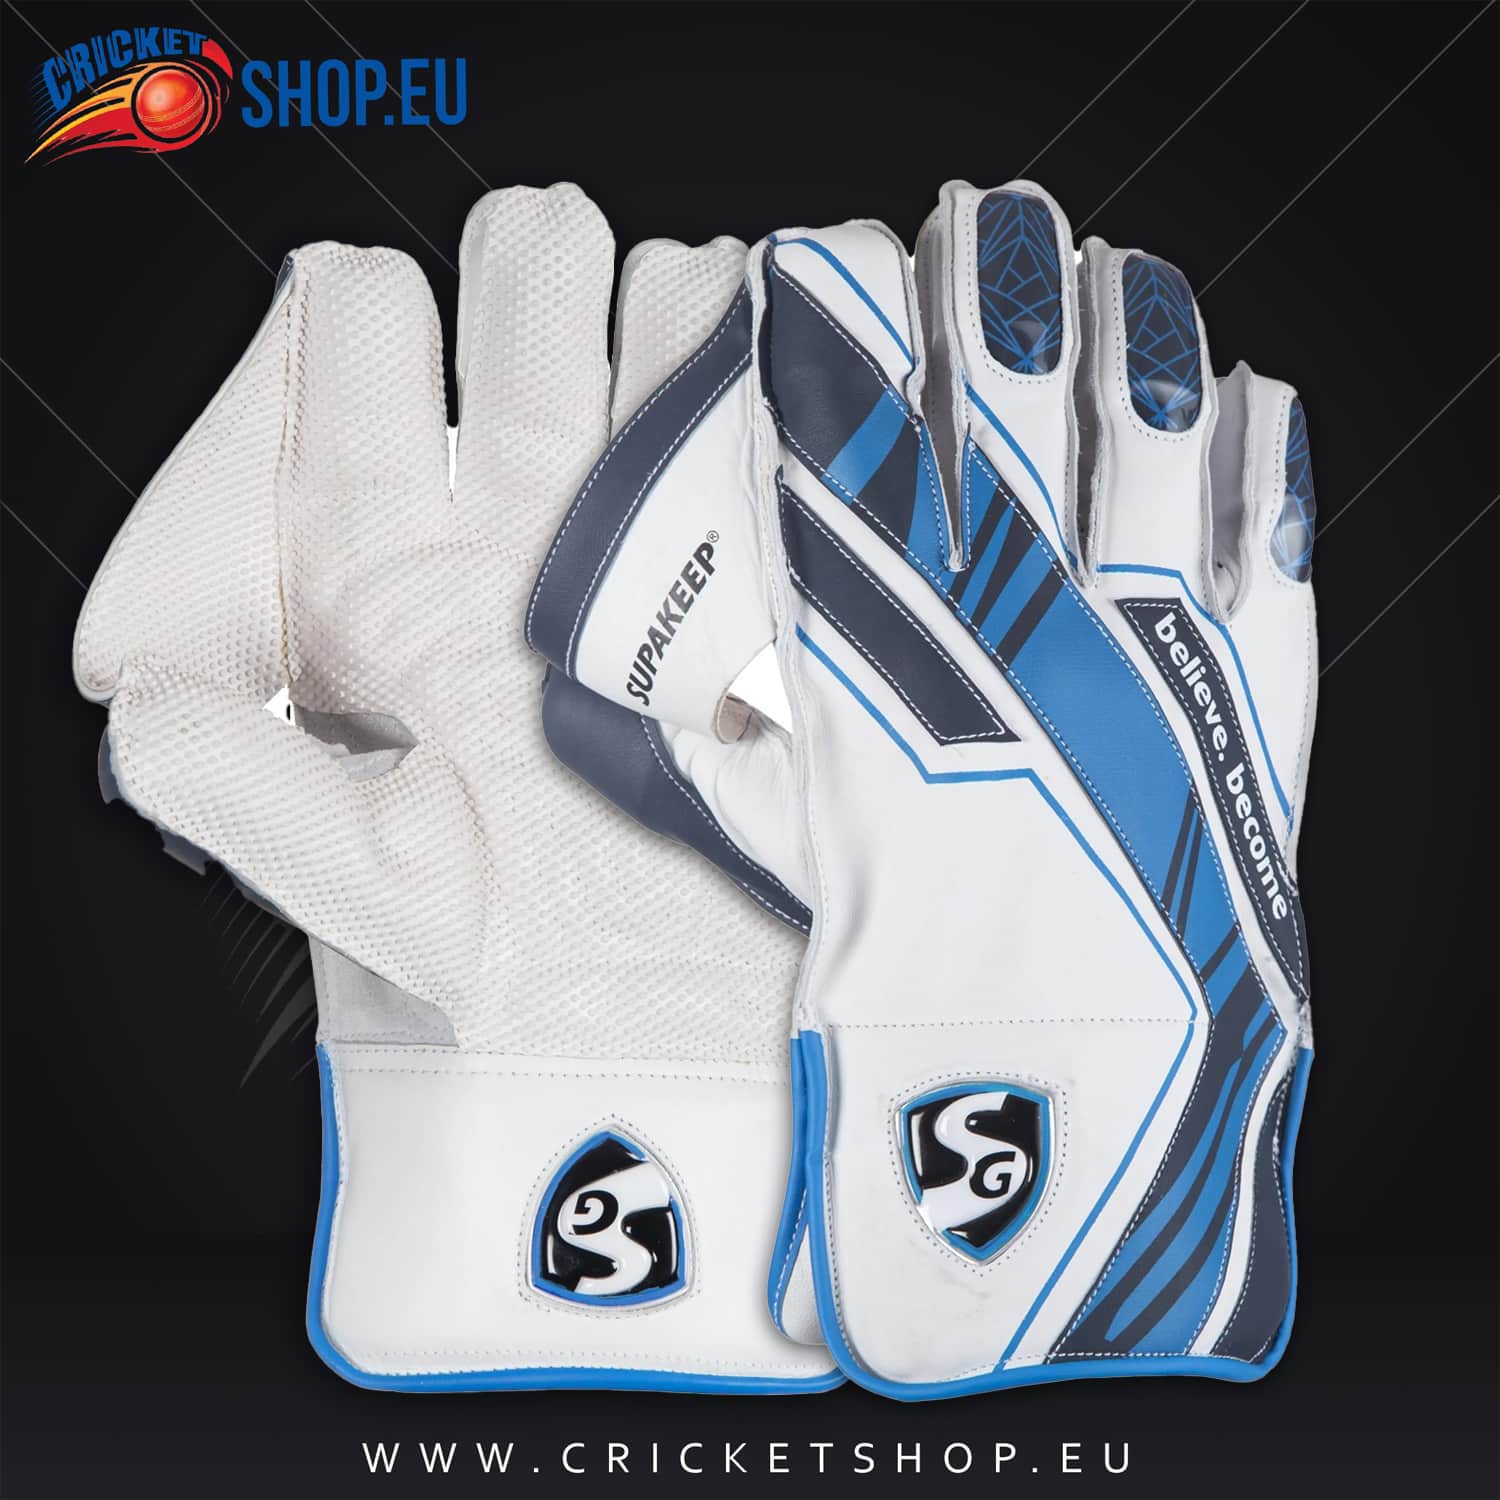 SG Supakeep Wicket Keeping Gloves